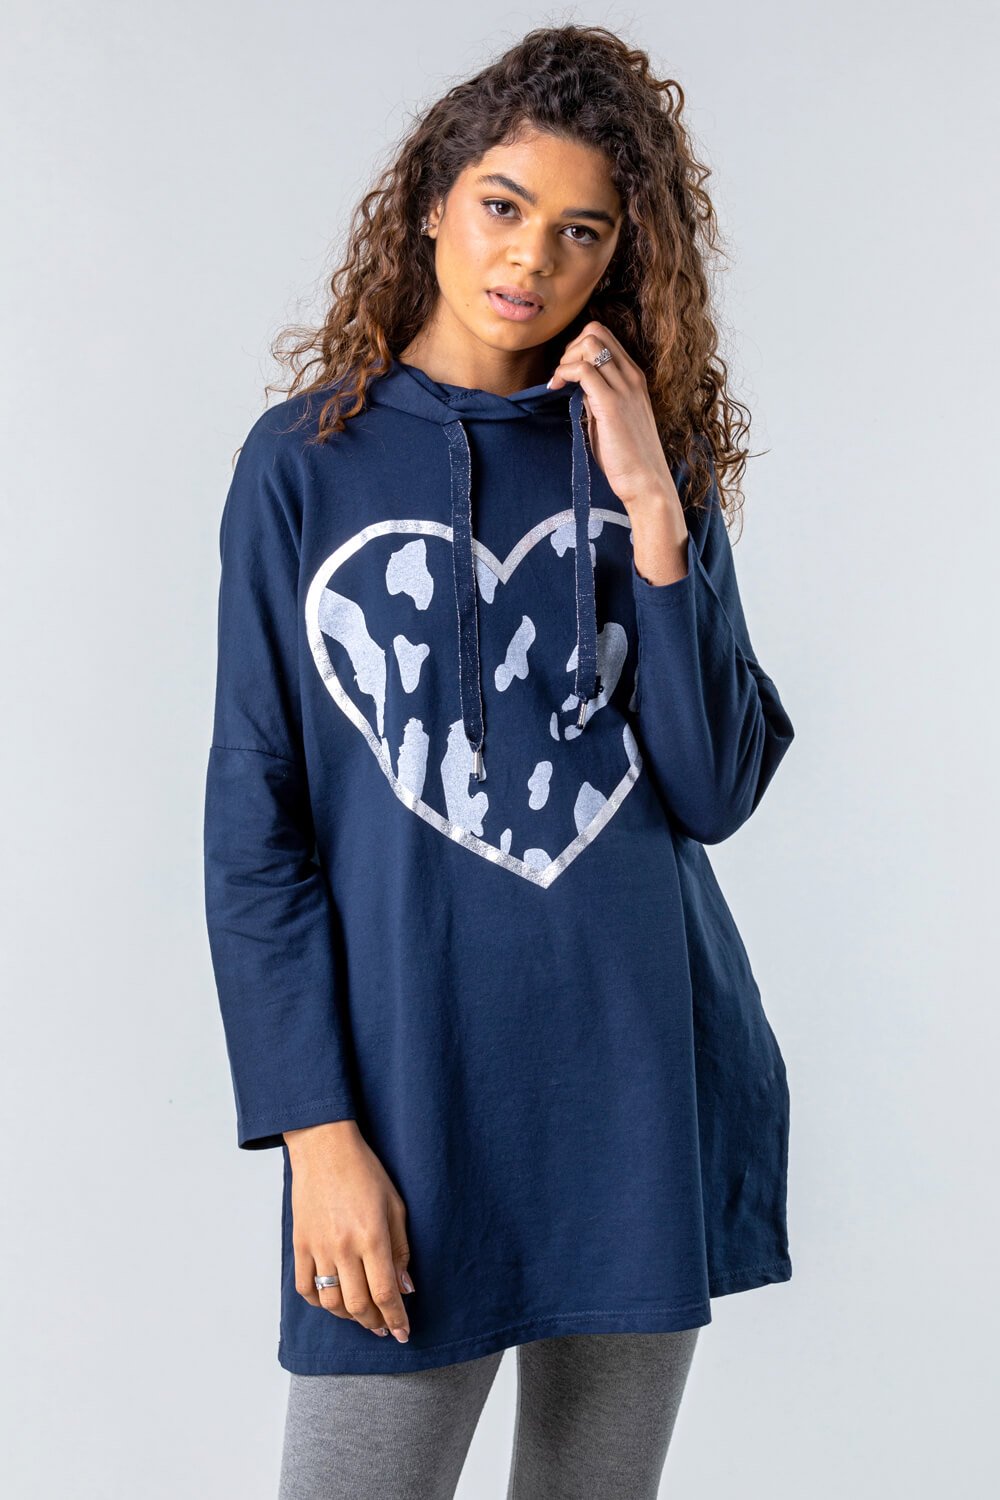 Camo Heart Hooded Lounge Sweatshirt